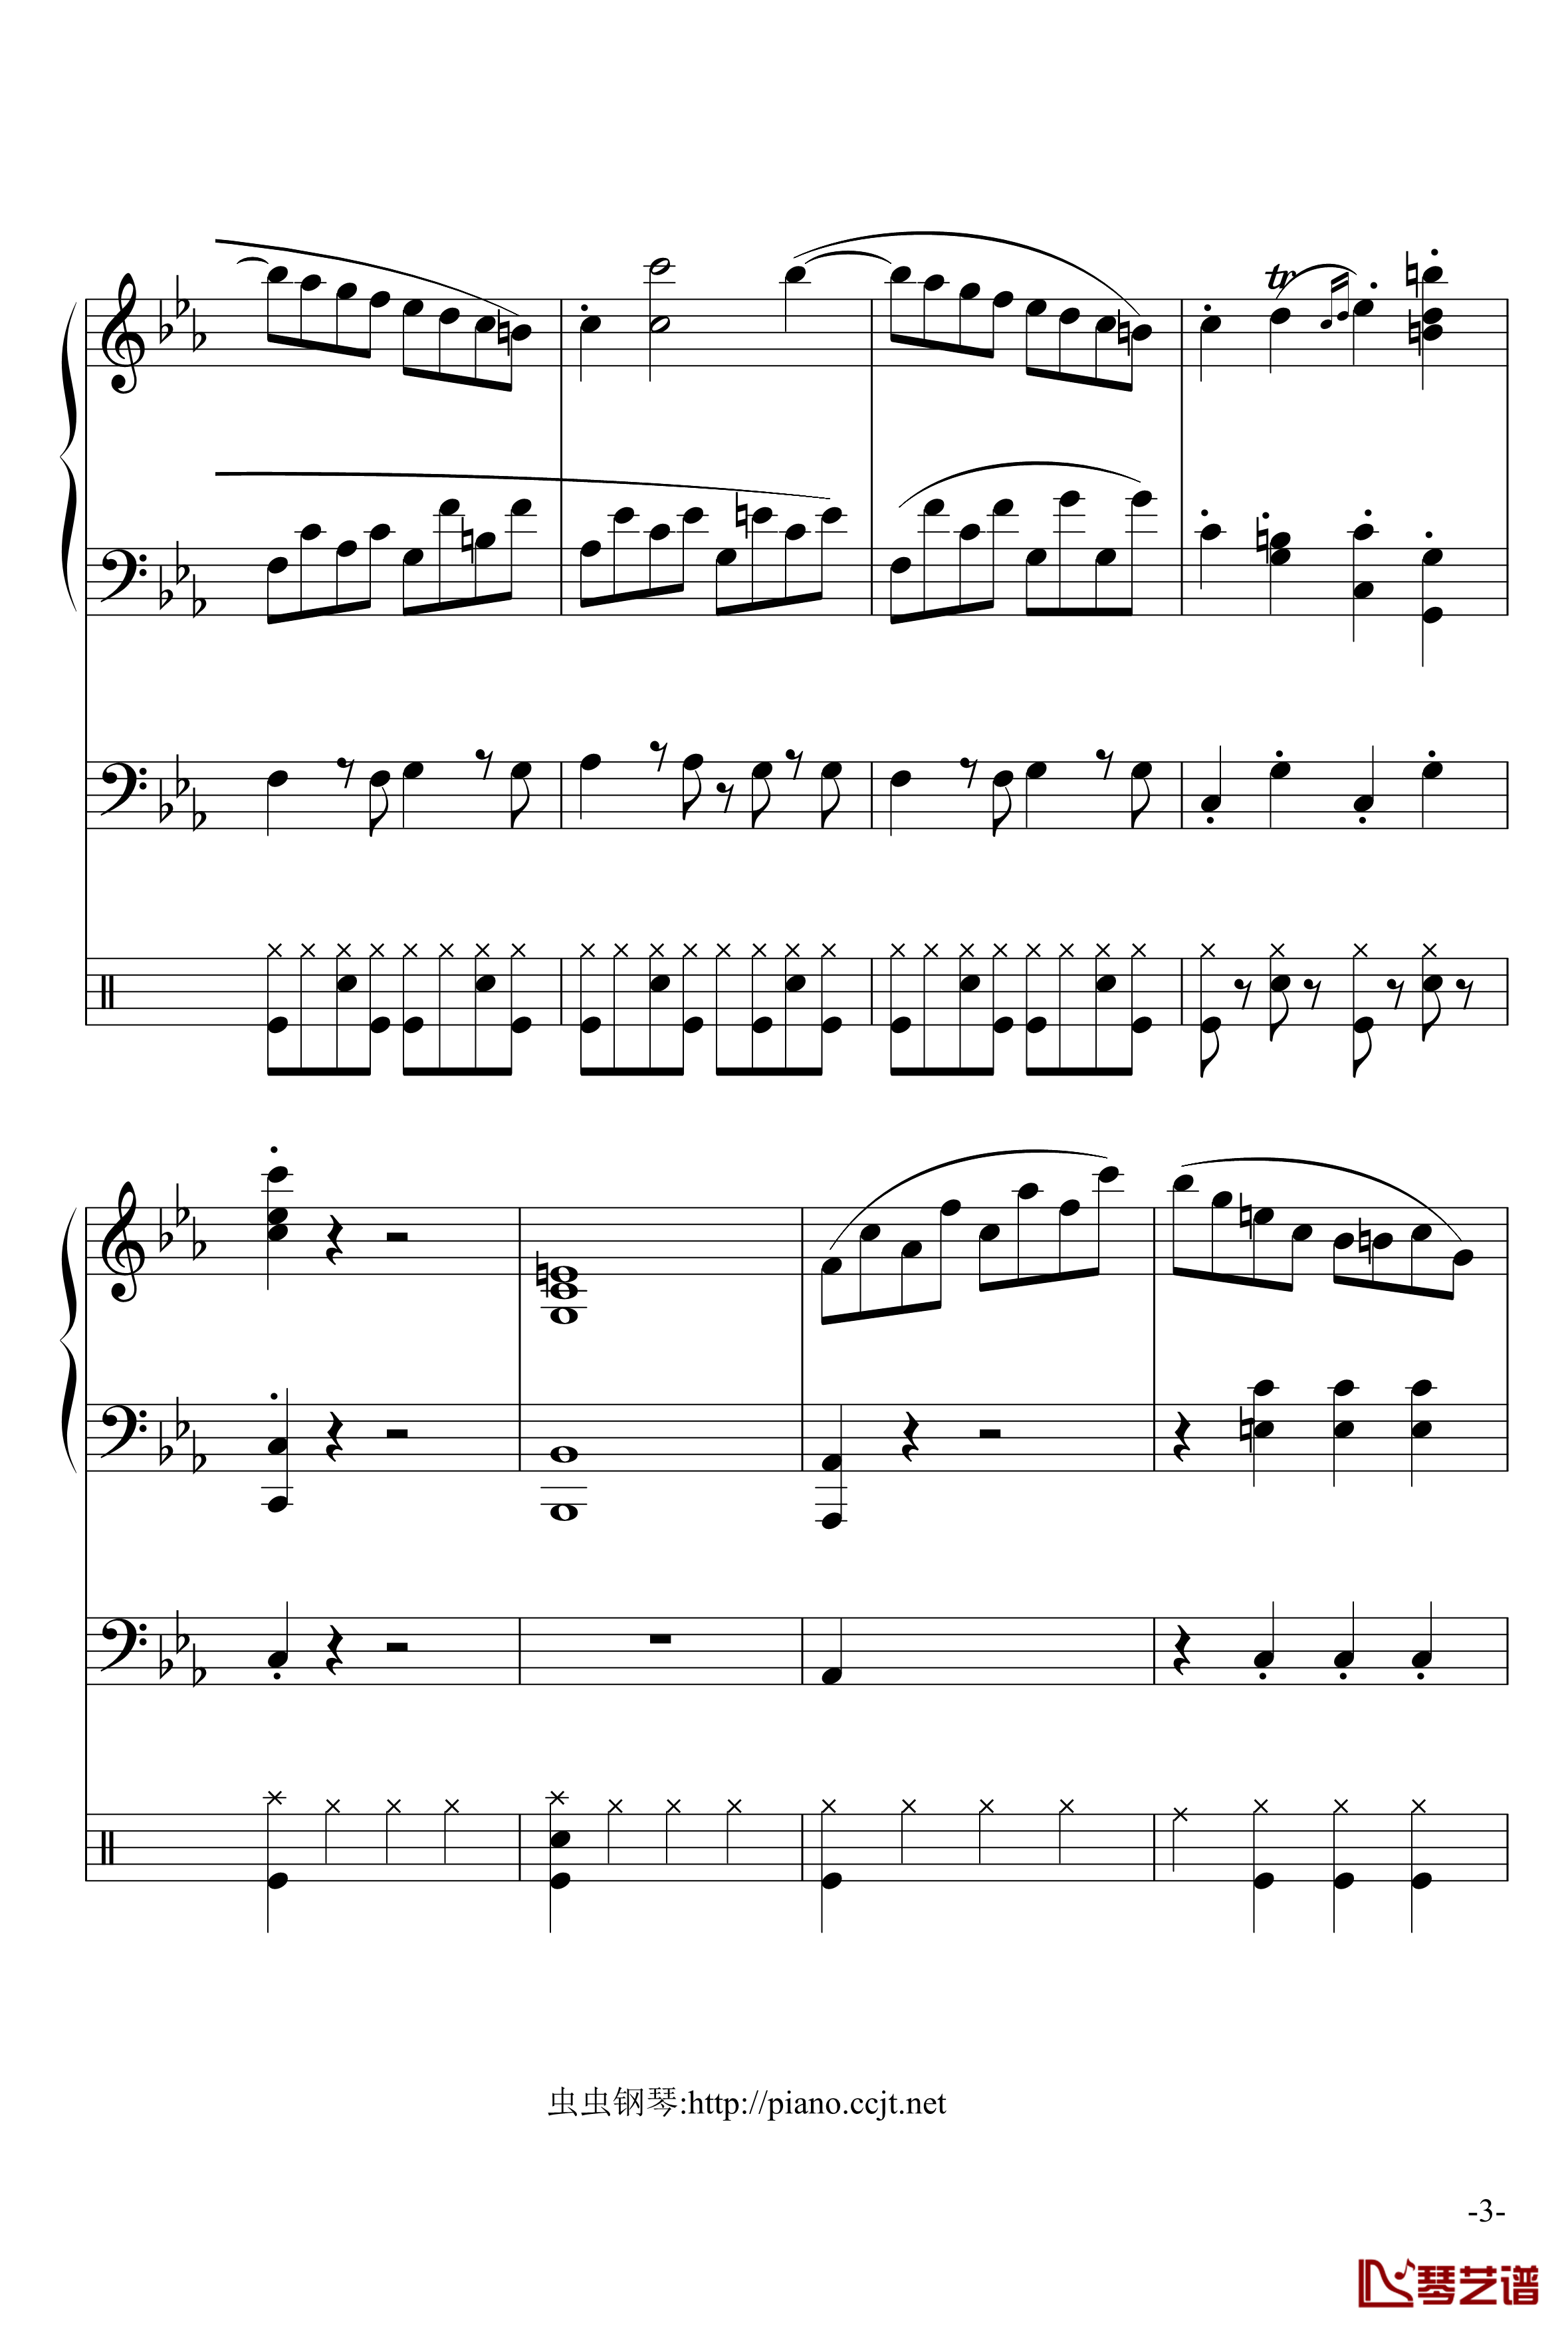 悲怆奏鸣曲钢琴谱-加小乐队-贝多芬-beethoven3